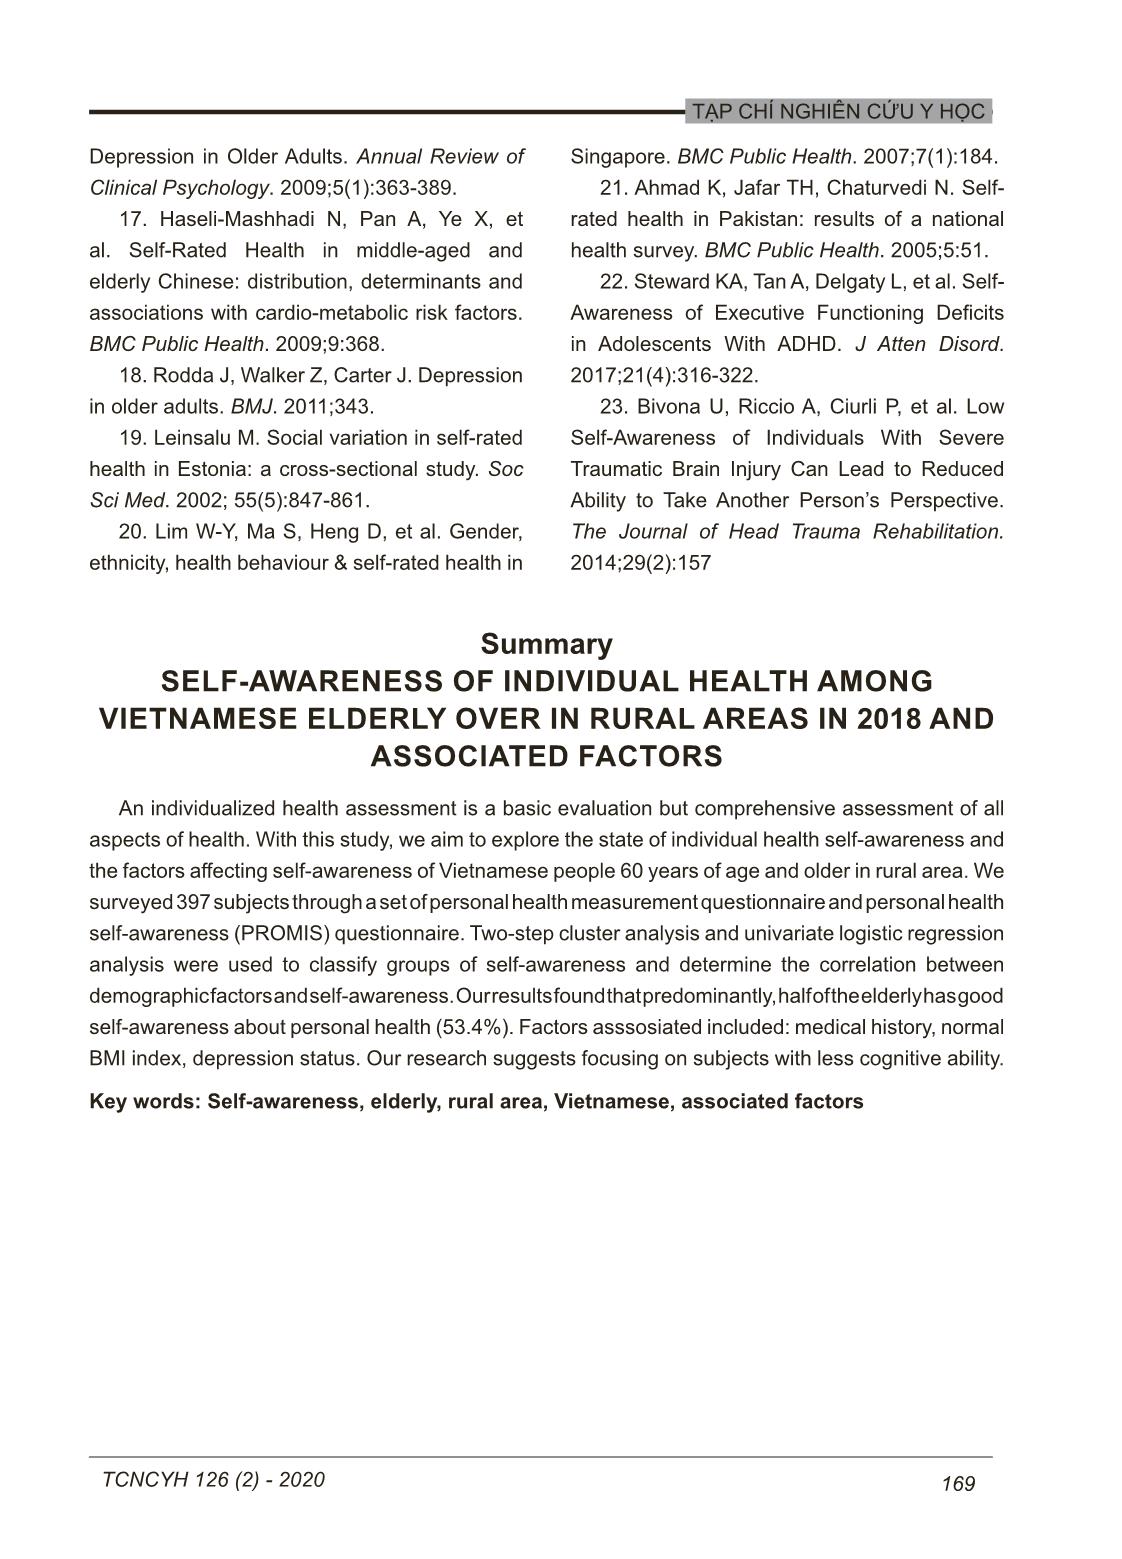 Thực trạng tự nhận thức về sức khỏe cá nhân của người cao tuổi tại vùng nông thôn Việt Nam năm 2018 và các yếu tố ảnh hưởng trang 7